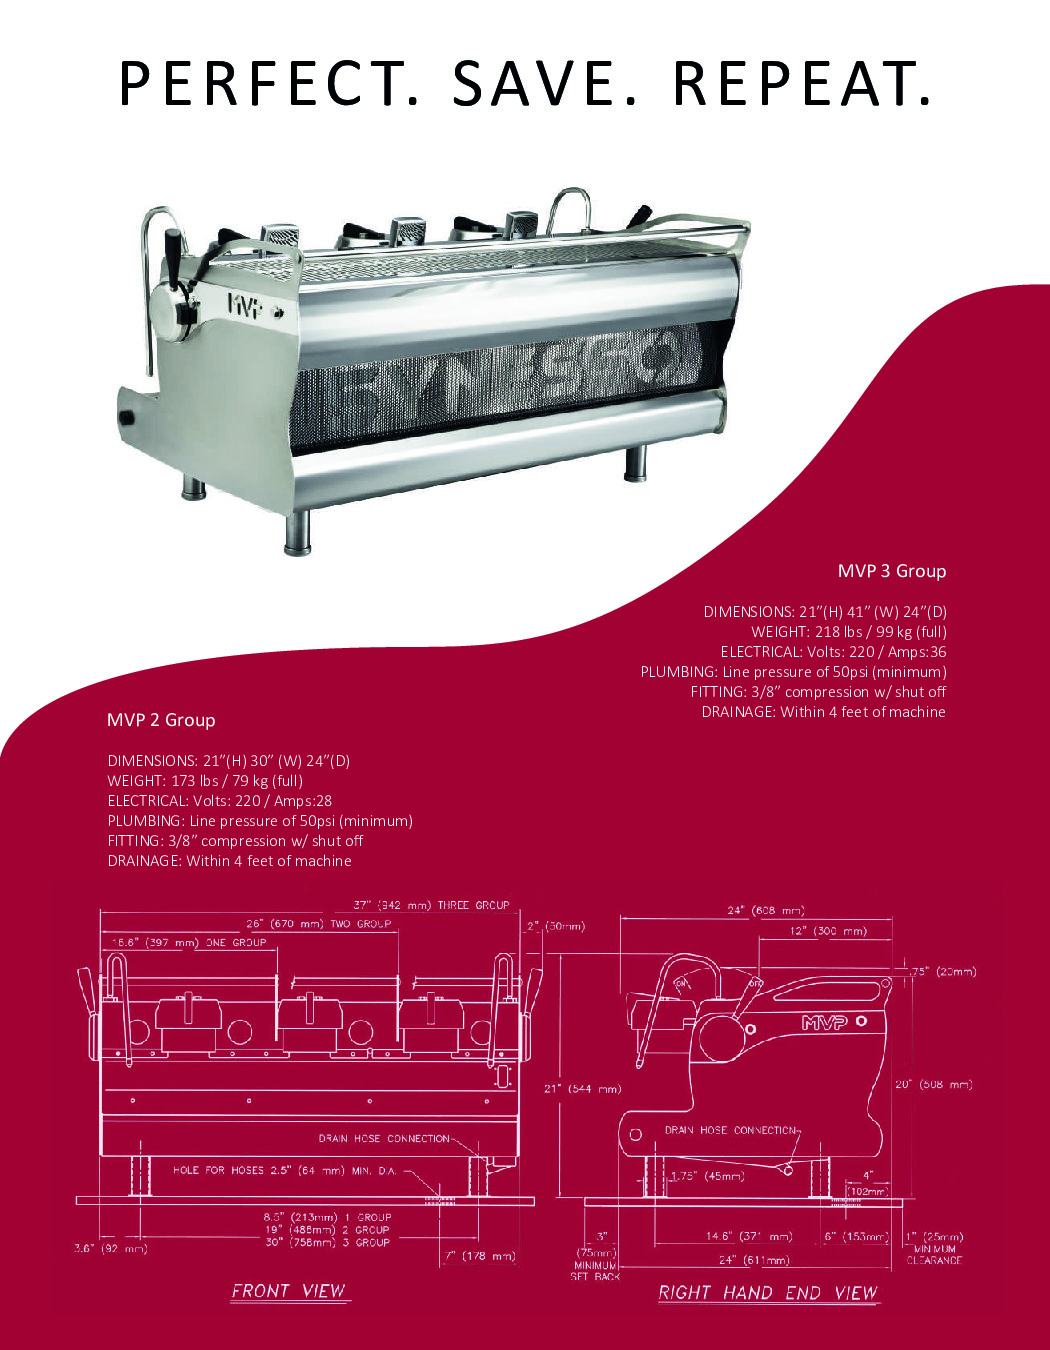 Synesso MVP 3 GR Espresso Cappuccino Machine w/ 3-Group, 12.3-Lt. Tanks, Semi-Automatic